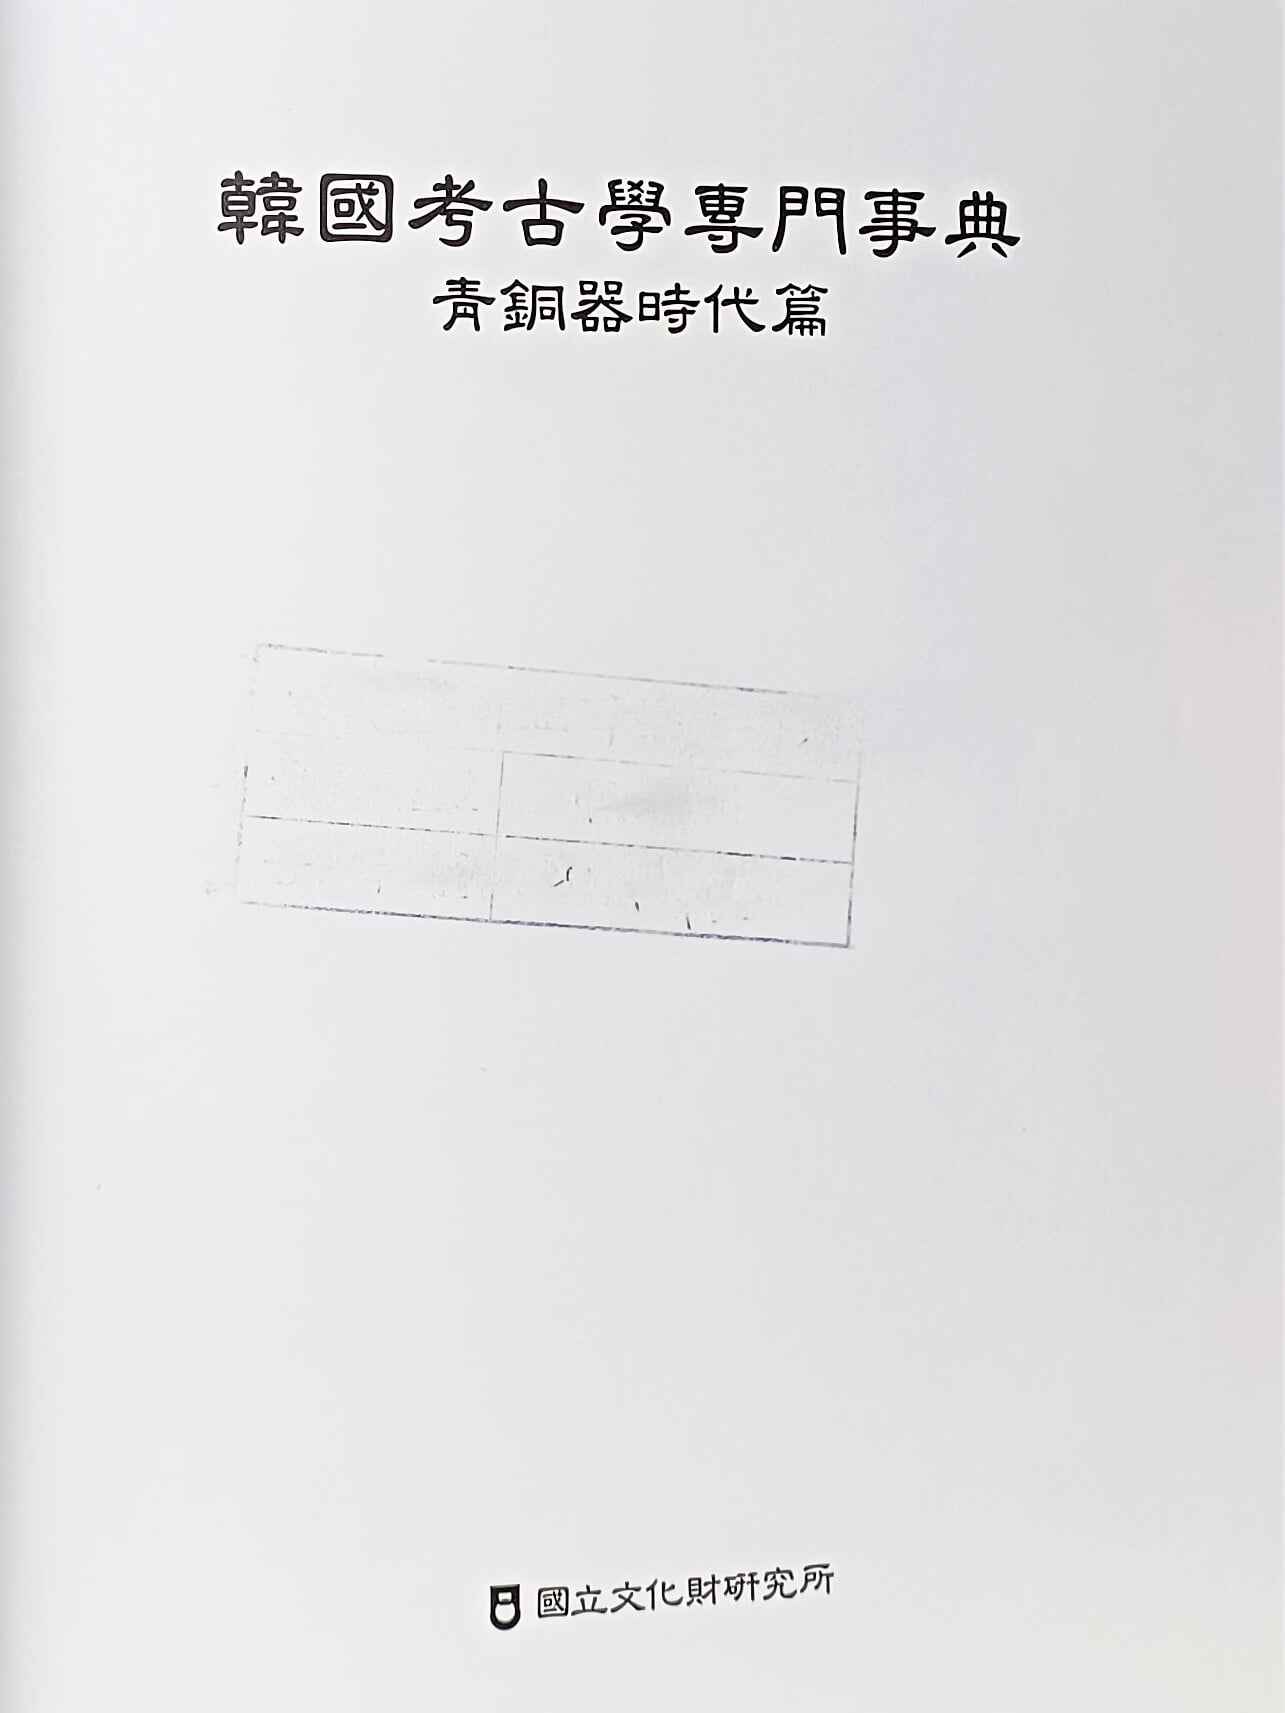 한국고고학전문사전 -청동기시대 편- 192/265/35, 629쪽,하드커버-최상급-아래설명참조-